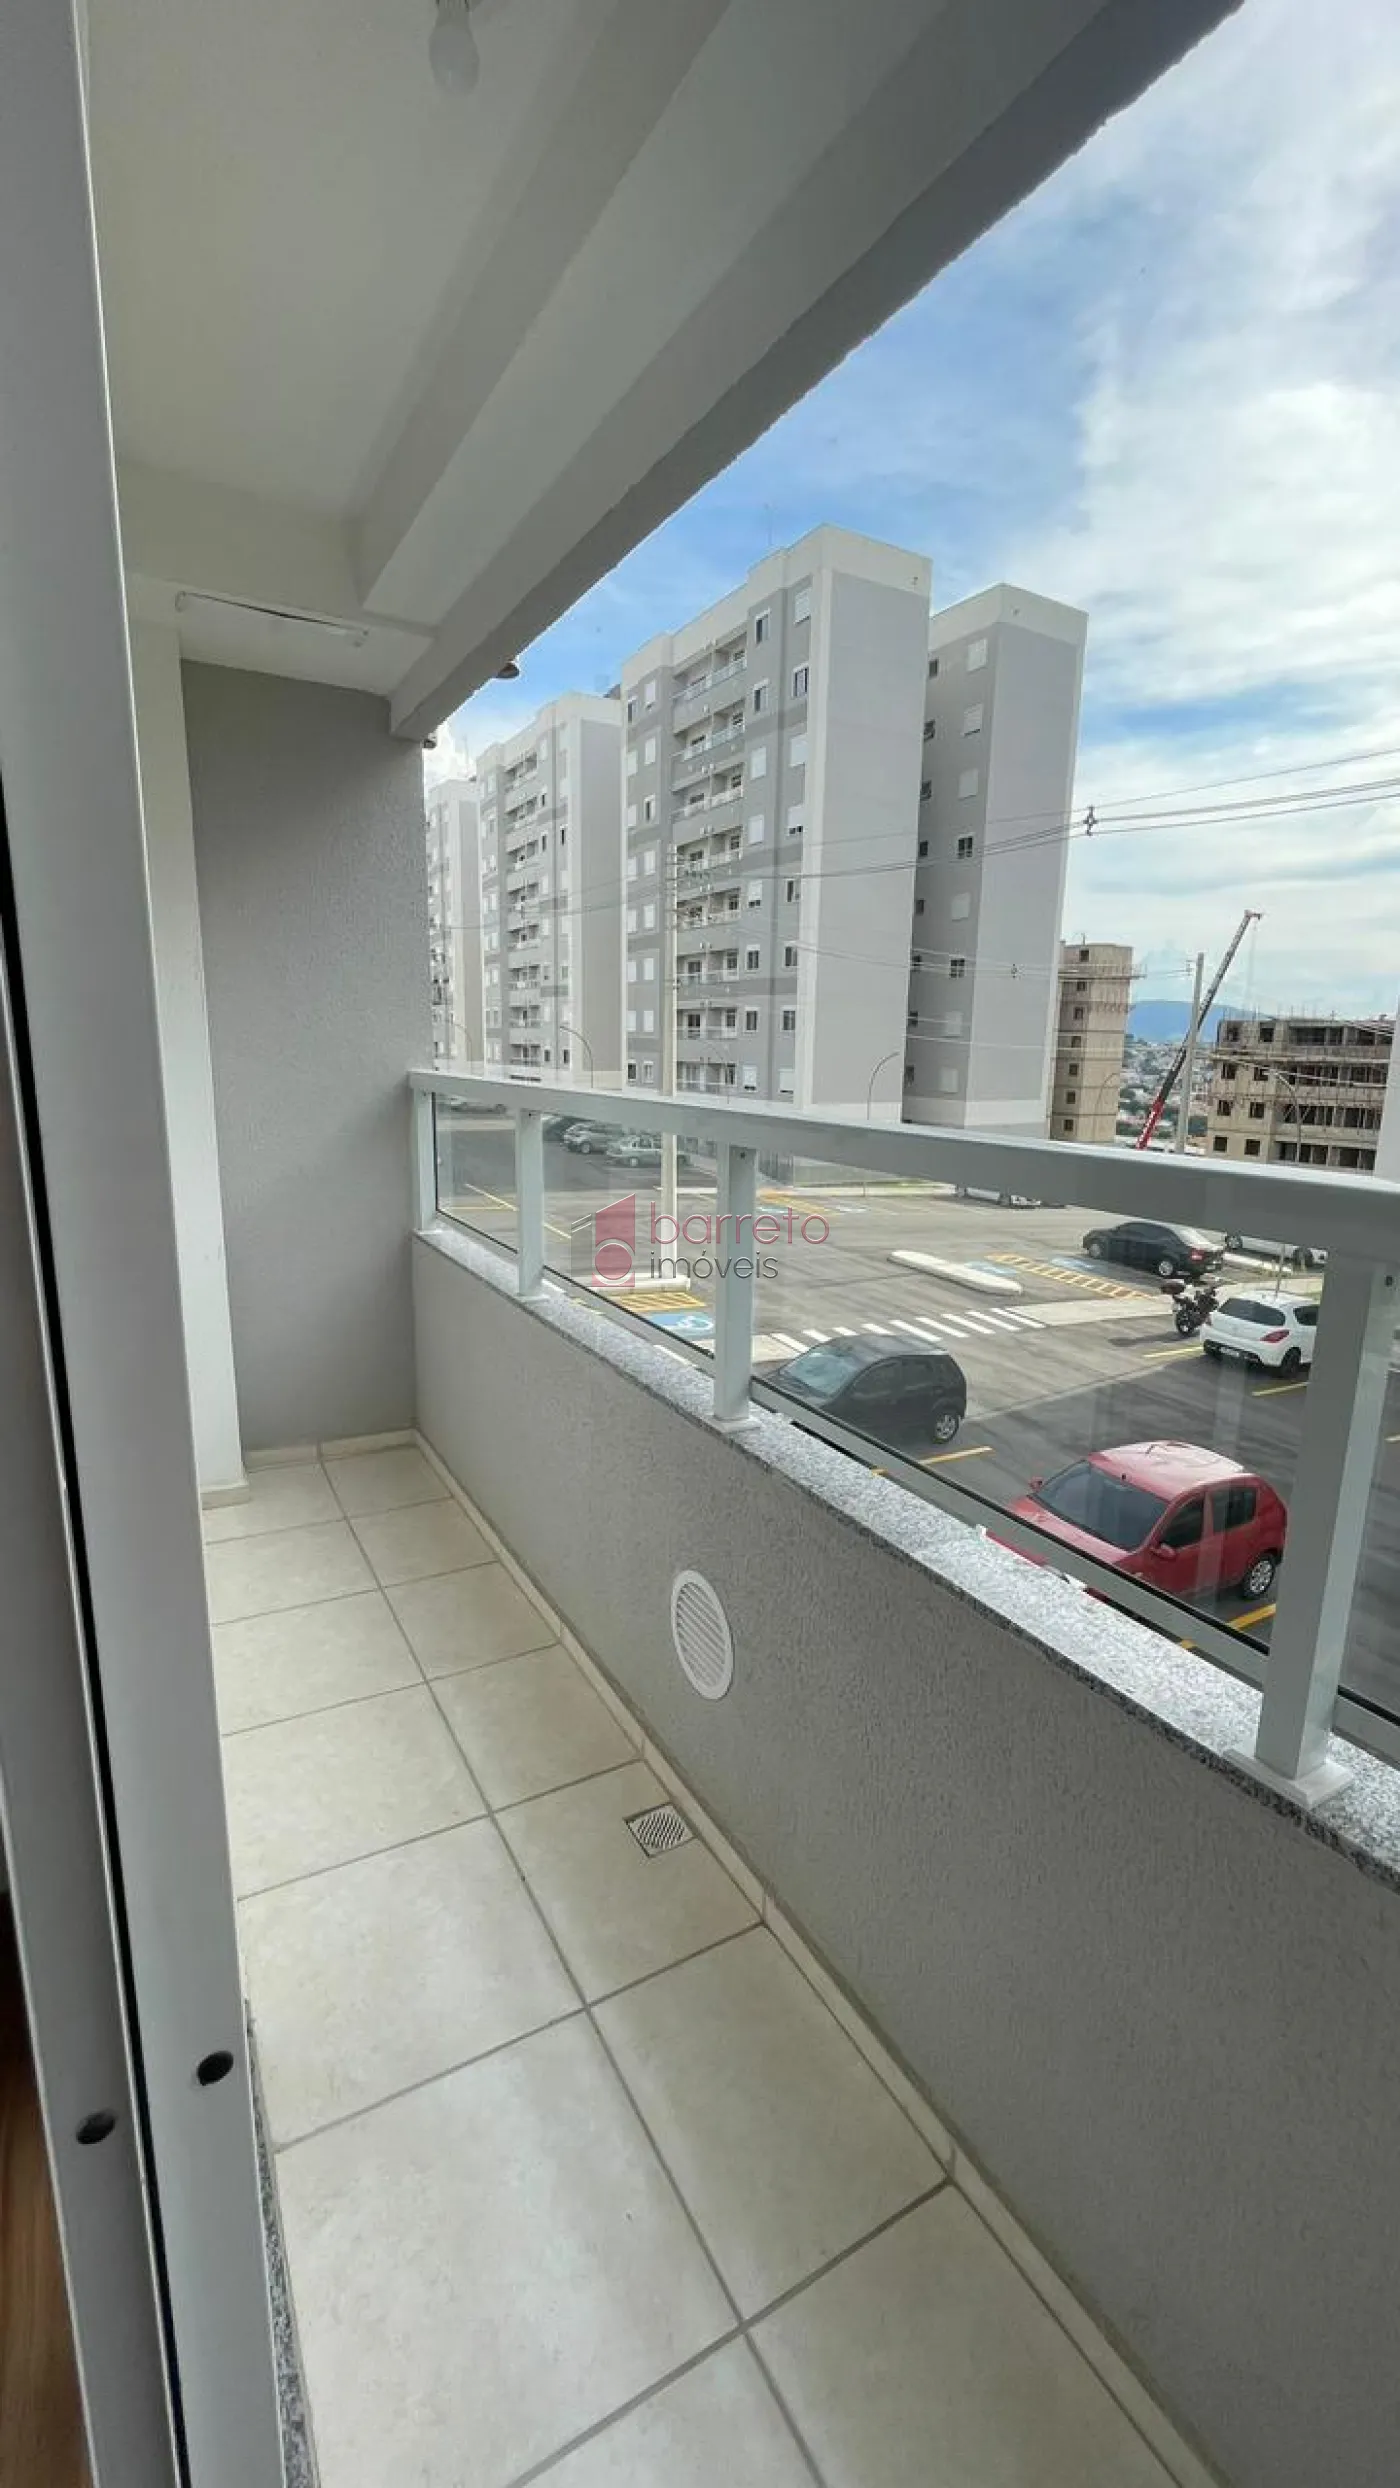 Alugar Apartamento / Padrão em Jundiaí R$ 2.000,00 - Foto 3